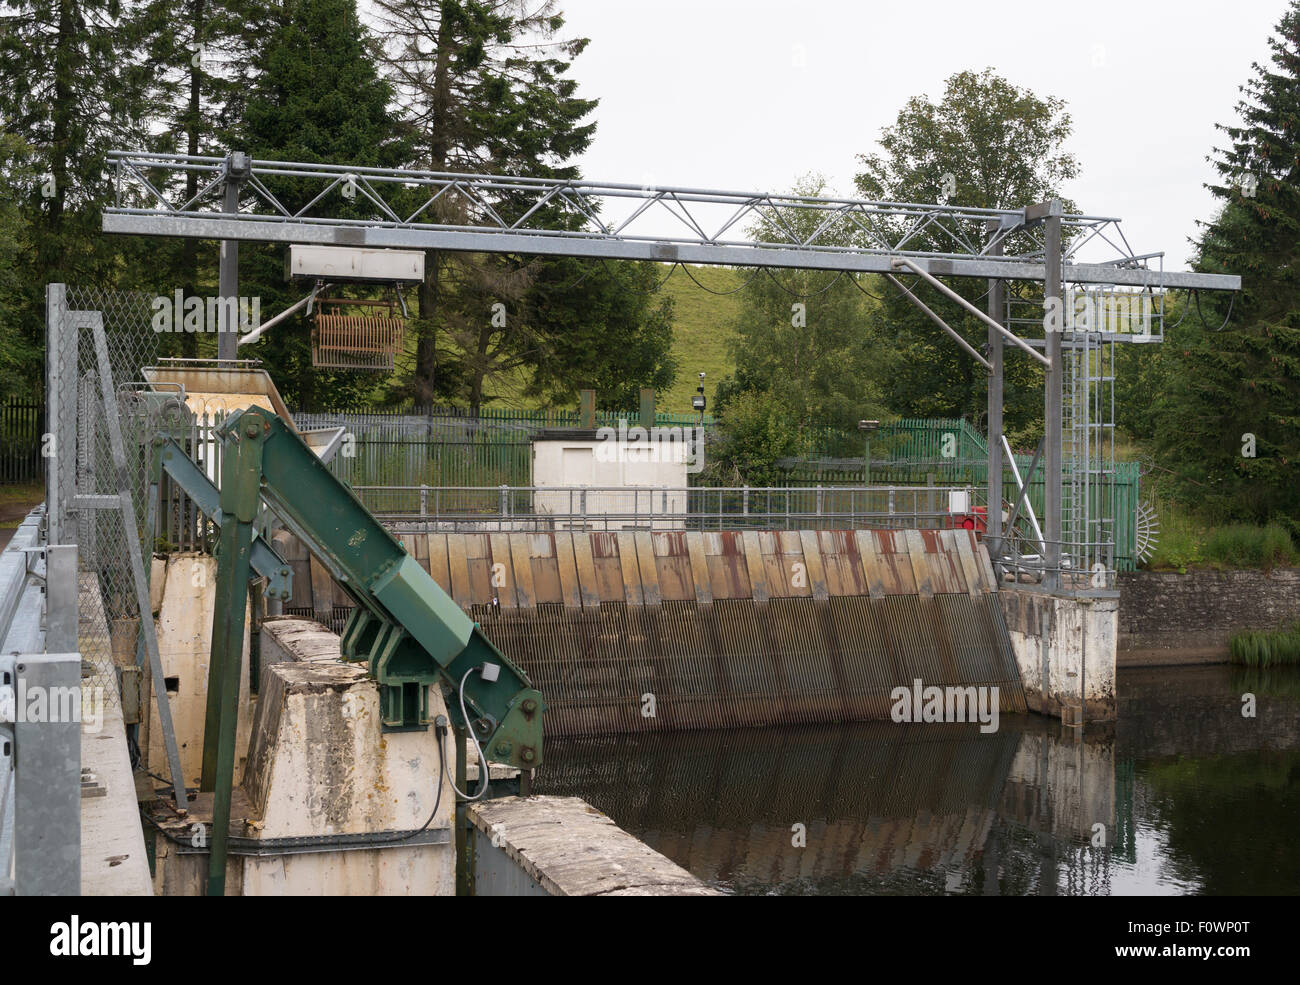 Acqua per aspirazione Bonnington Hydro Power Station al Bonnington Linn, New Lanark, South Lanarkshire, Scotland, Regno Unito Foto Stock